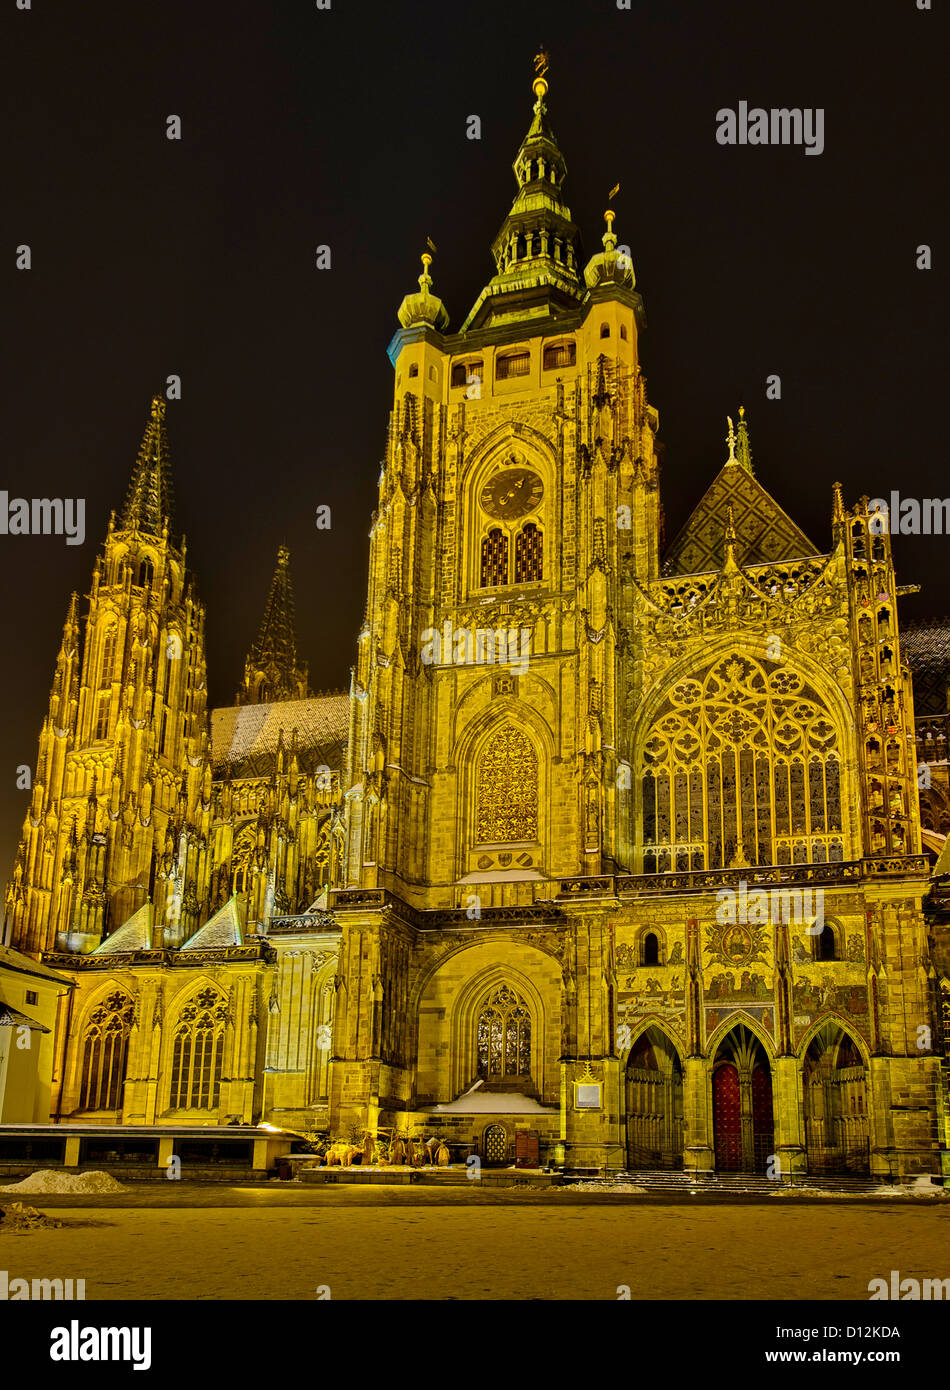 La cathédrale Saint-Guy la nuit, Prague, République tchèque. Banque D'Images